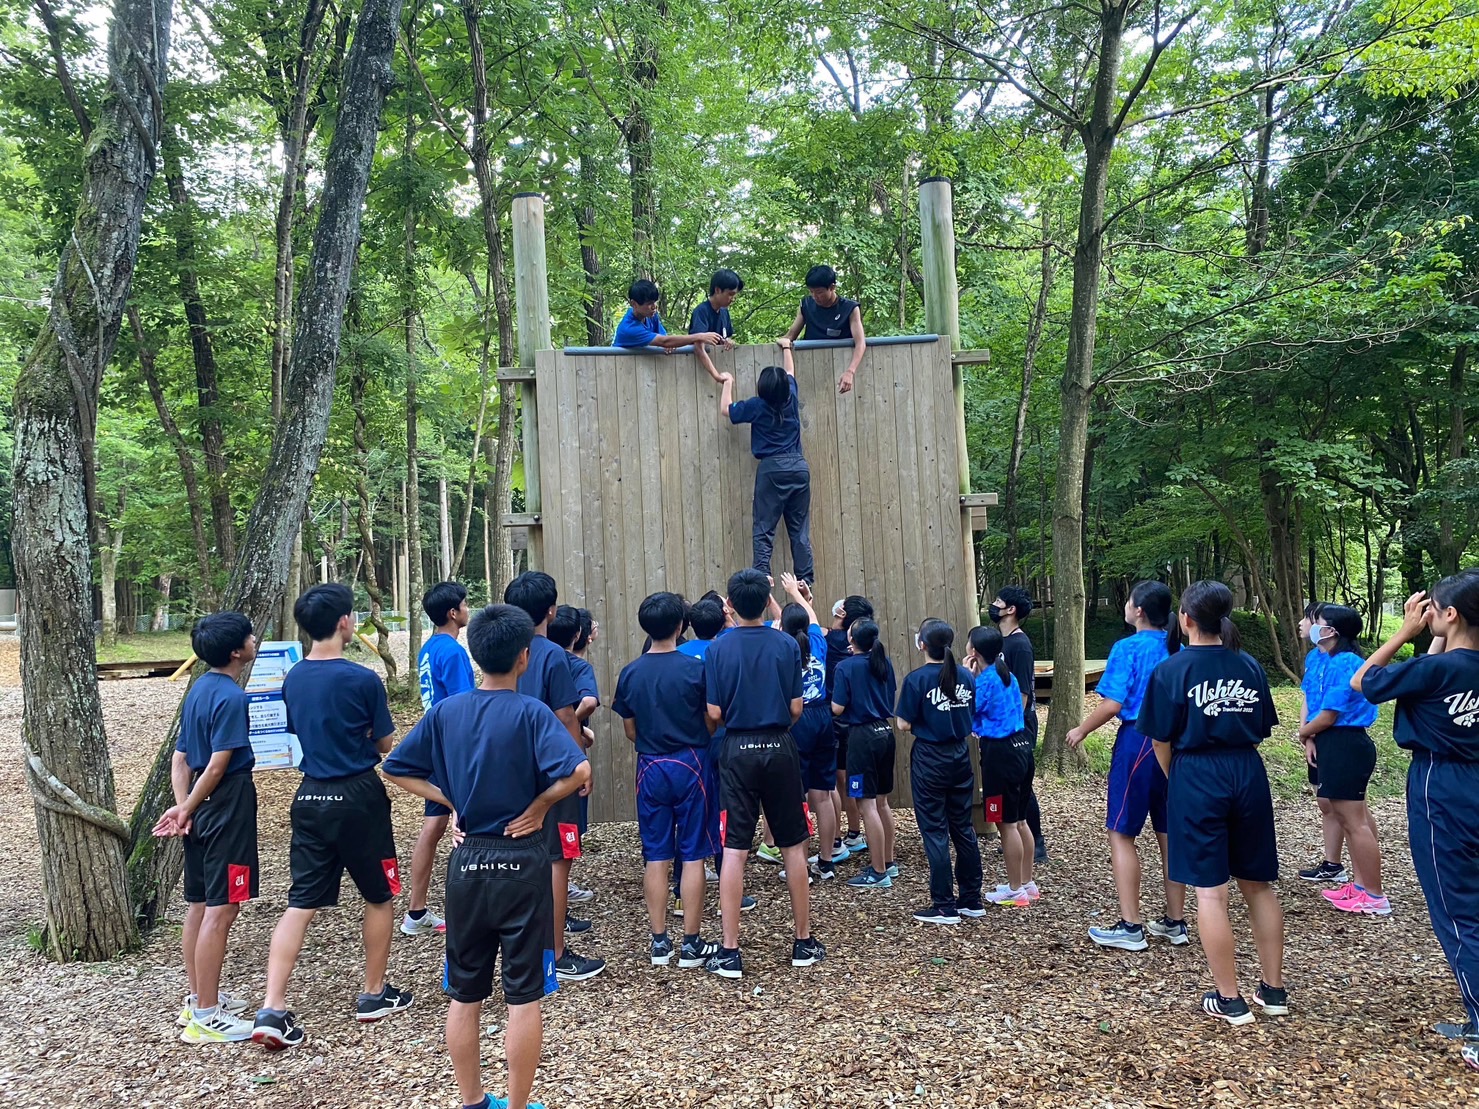 森の中に設置された大きな木製の壁をよじ登ろうとする生徒とそれを見守る生徒たち